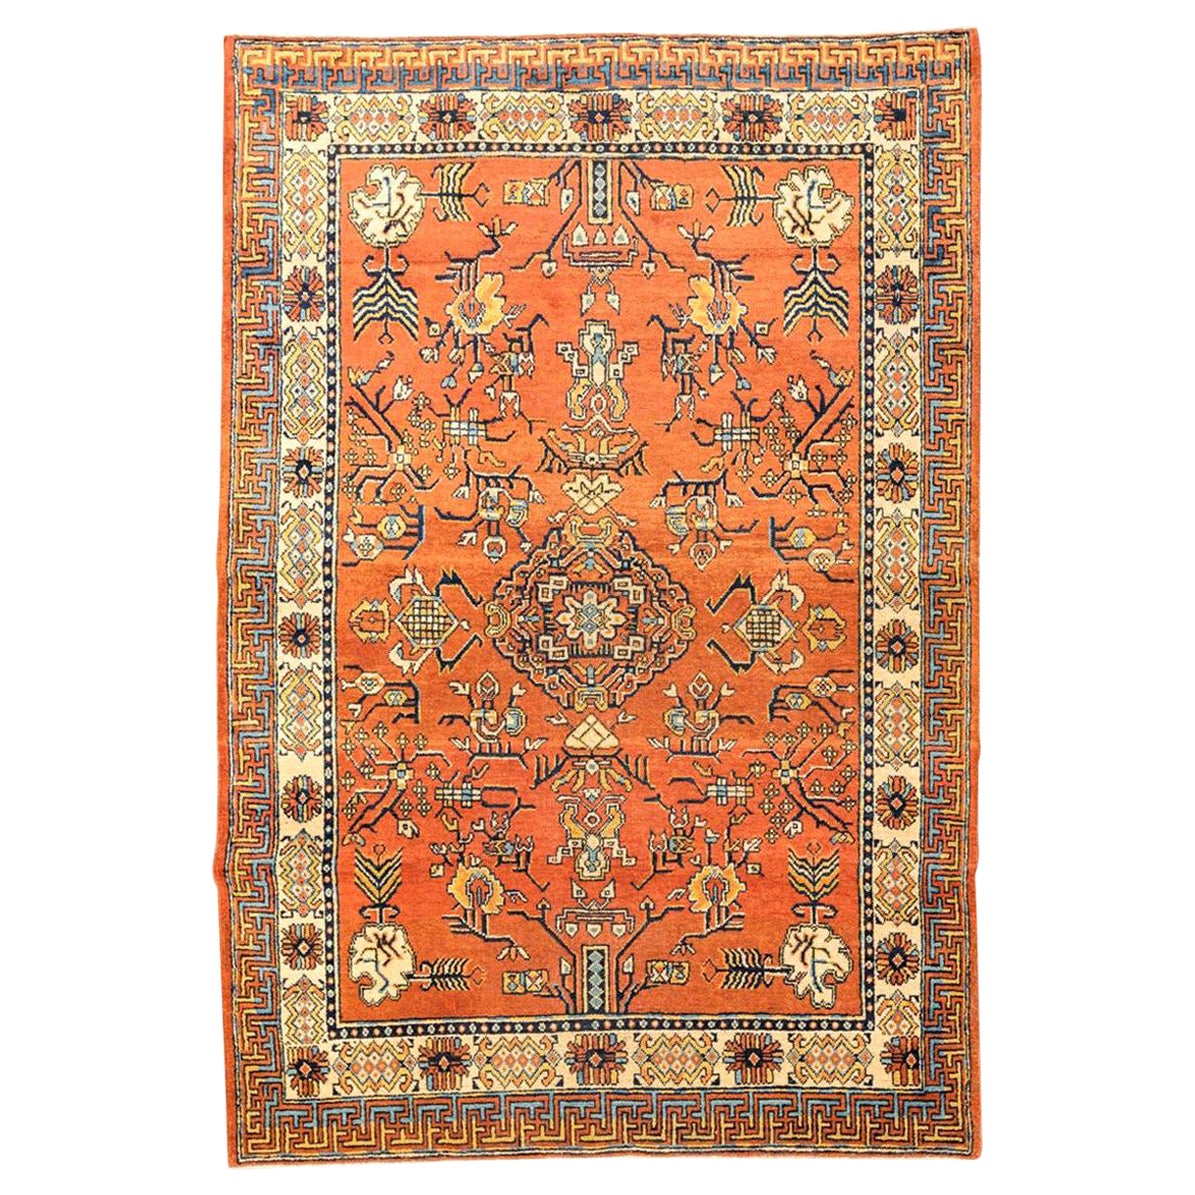 Handgefertigter Samarkand-Teppich aus Wolle des 20. Jahrhunderts, Kothan-Design, um 1900